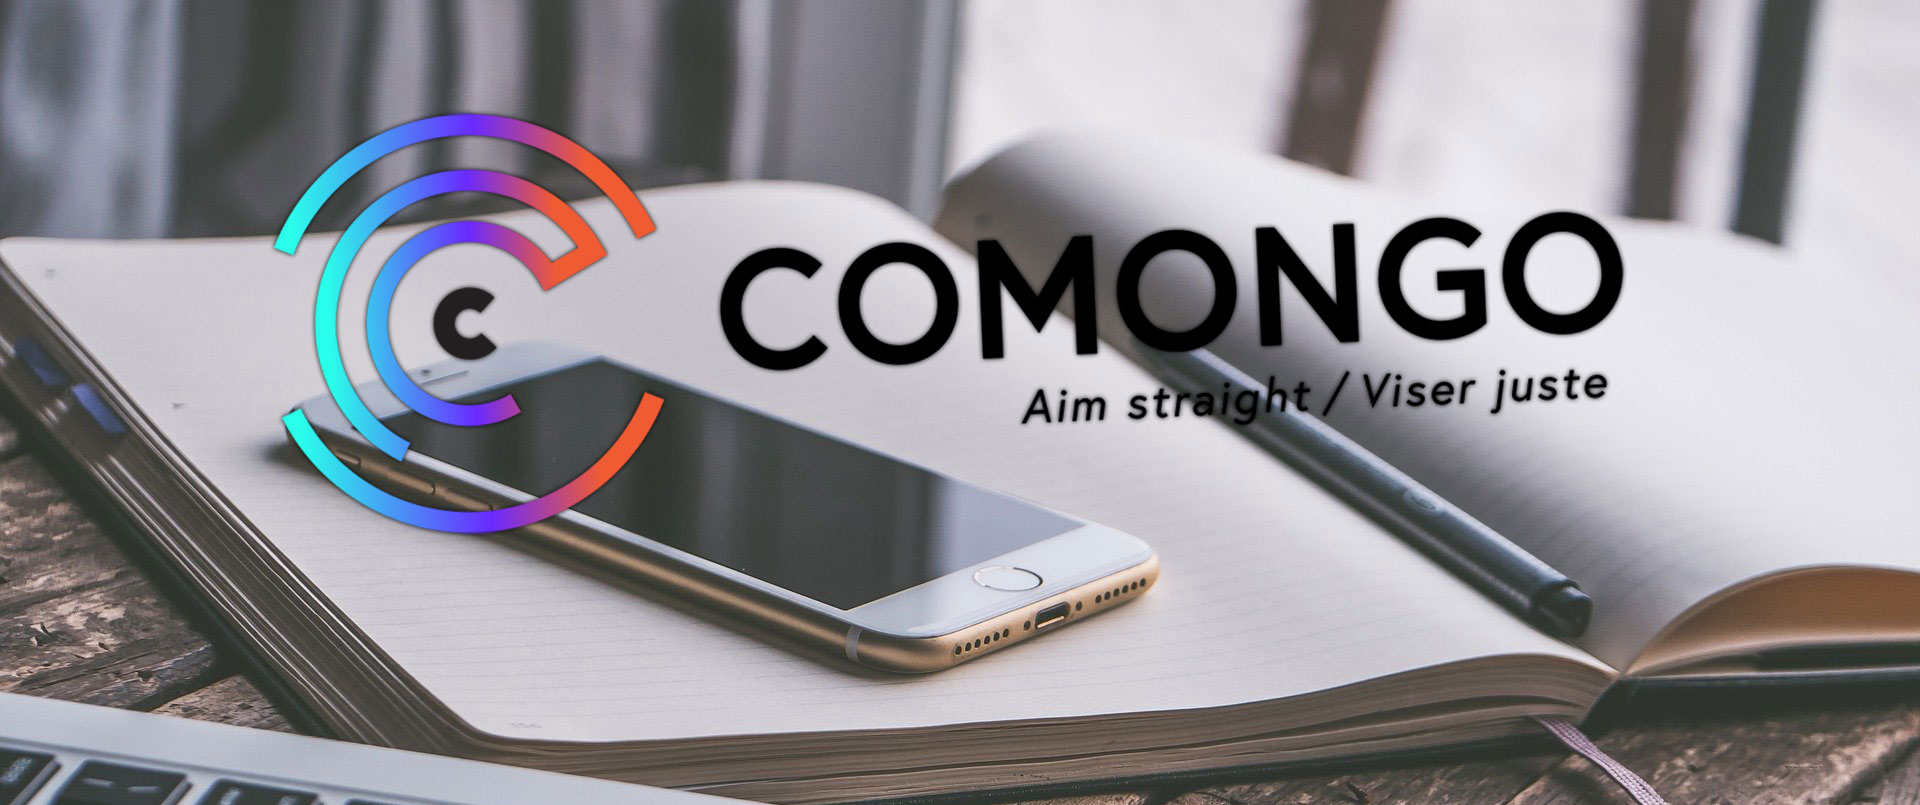 Comongo-Comonimage